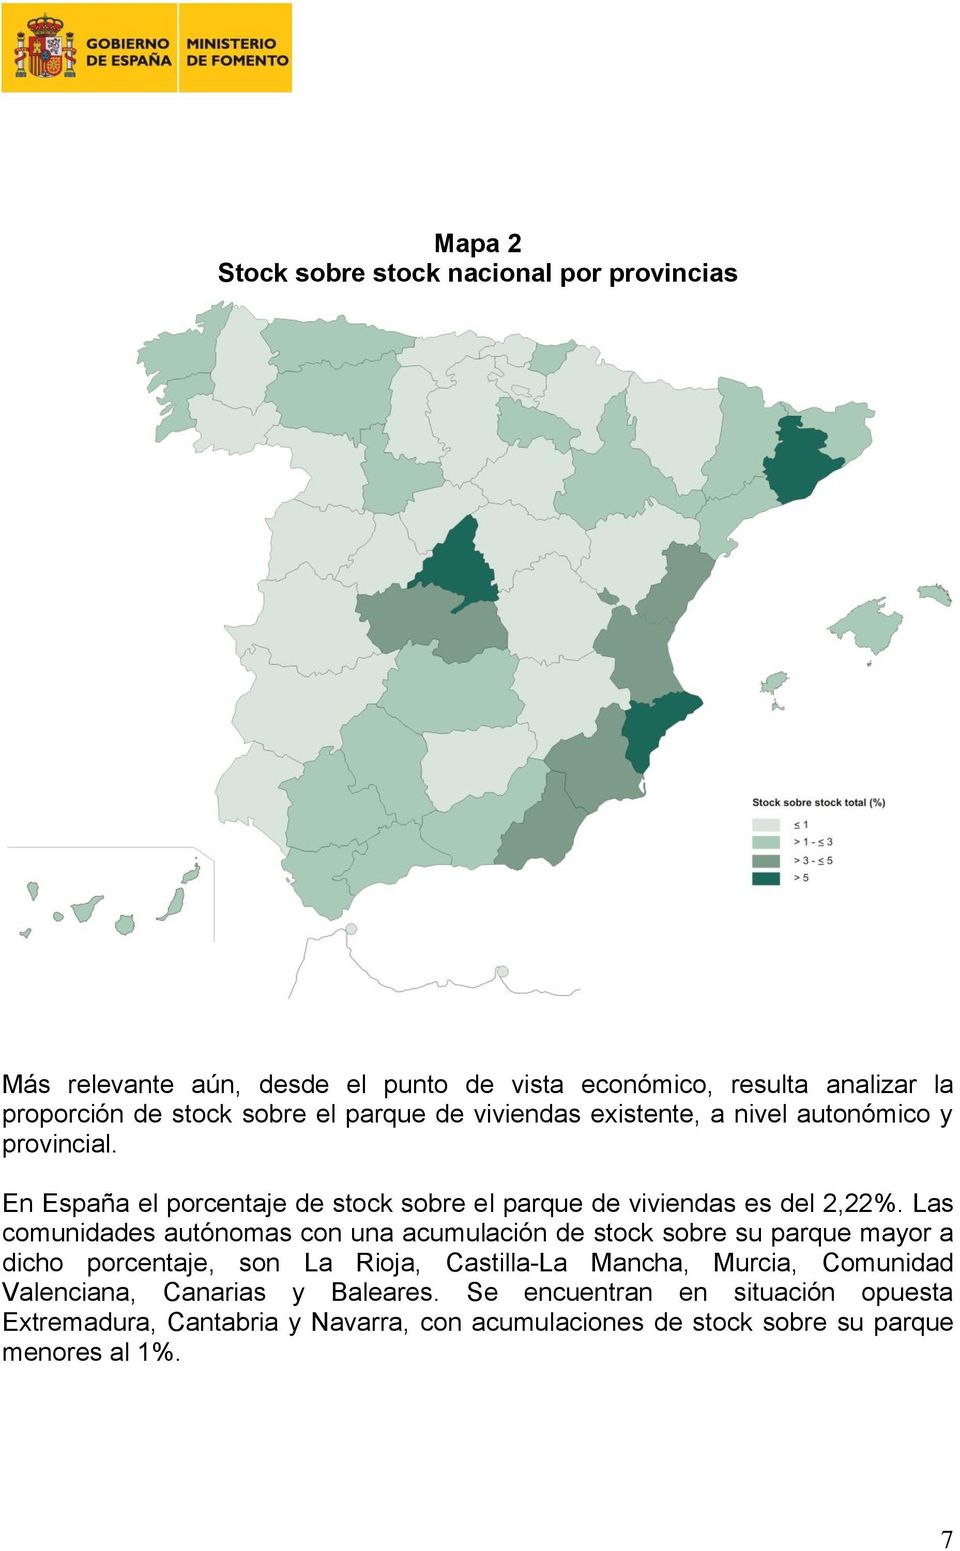 Las comunidades autónomas con una acumulación de stock sobre su parque mayor a dicho porcentaje, son La Rioja, Castilla-La Mancha, Murcia, Comunidad